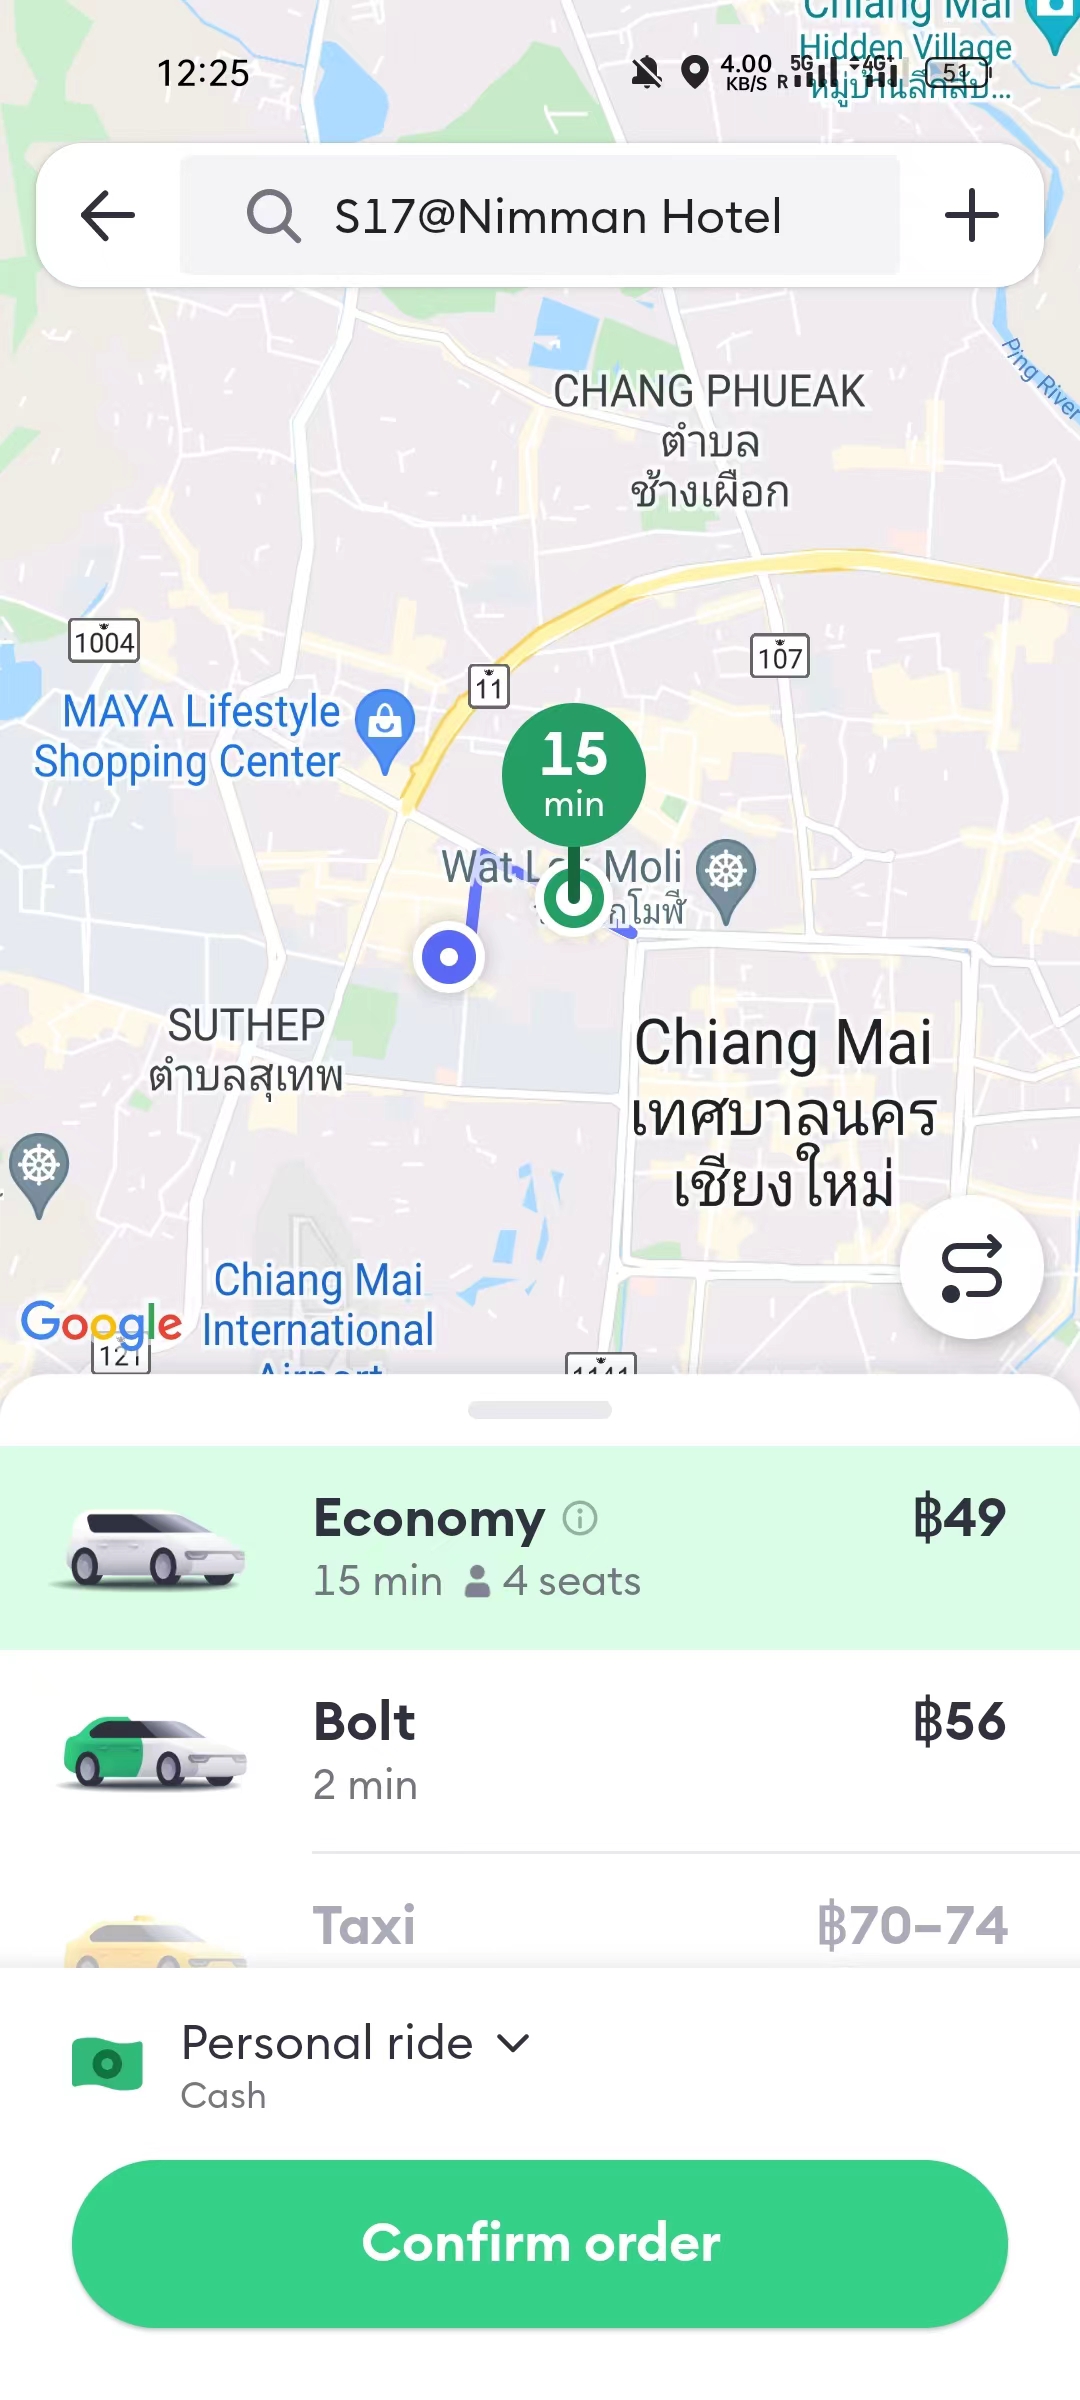 芭提雅|泰国热门旅游城市的打车价格大幅降低！科技改变生活